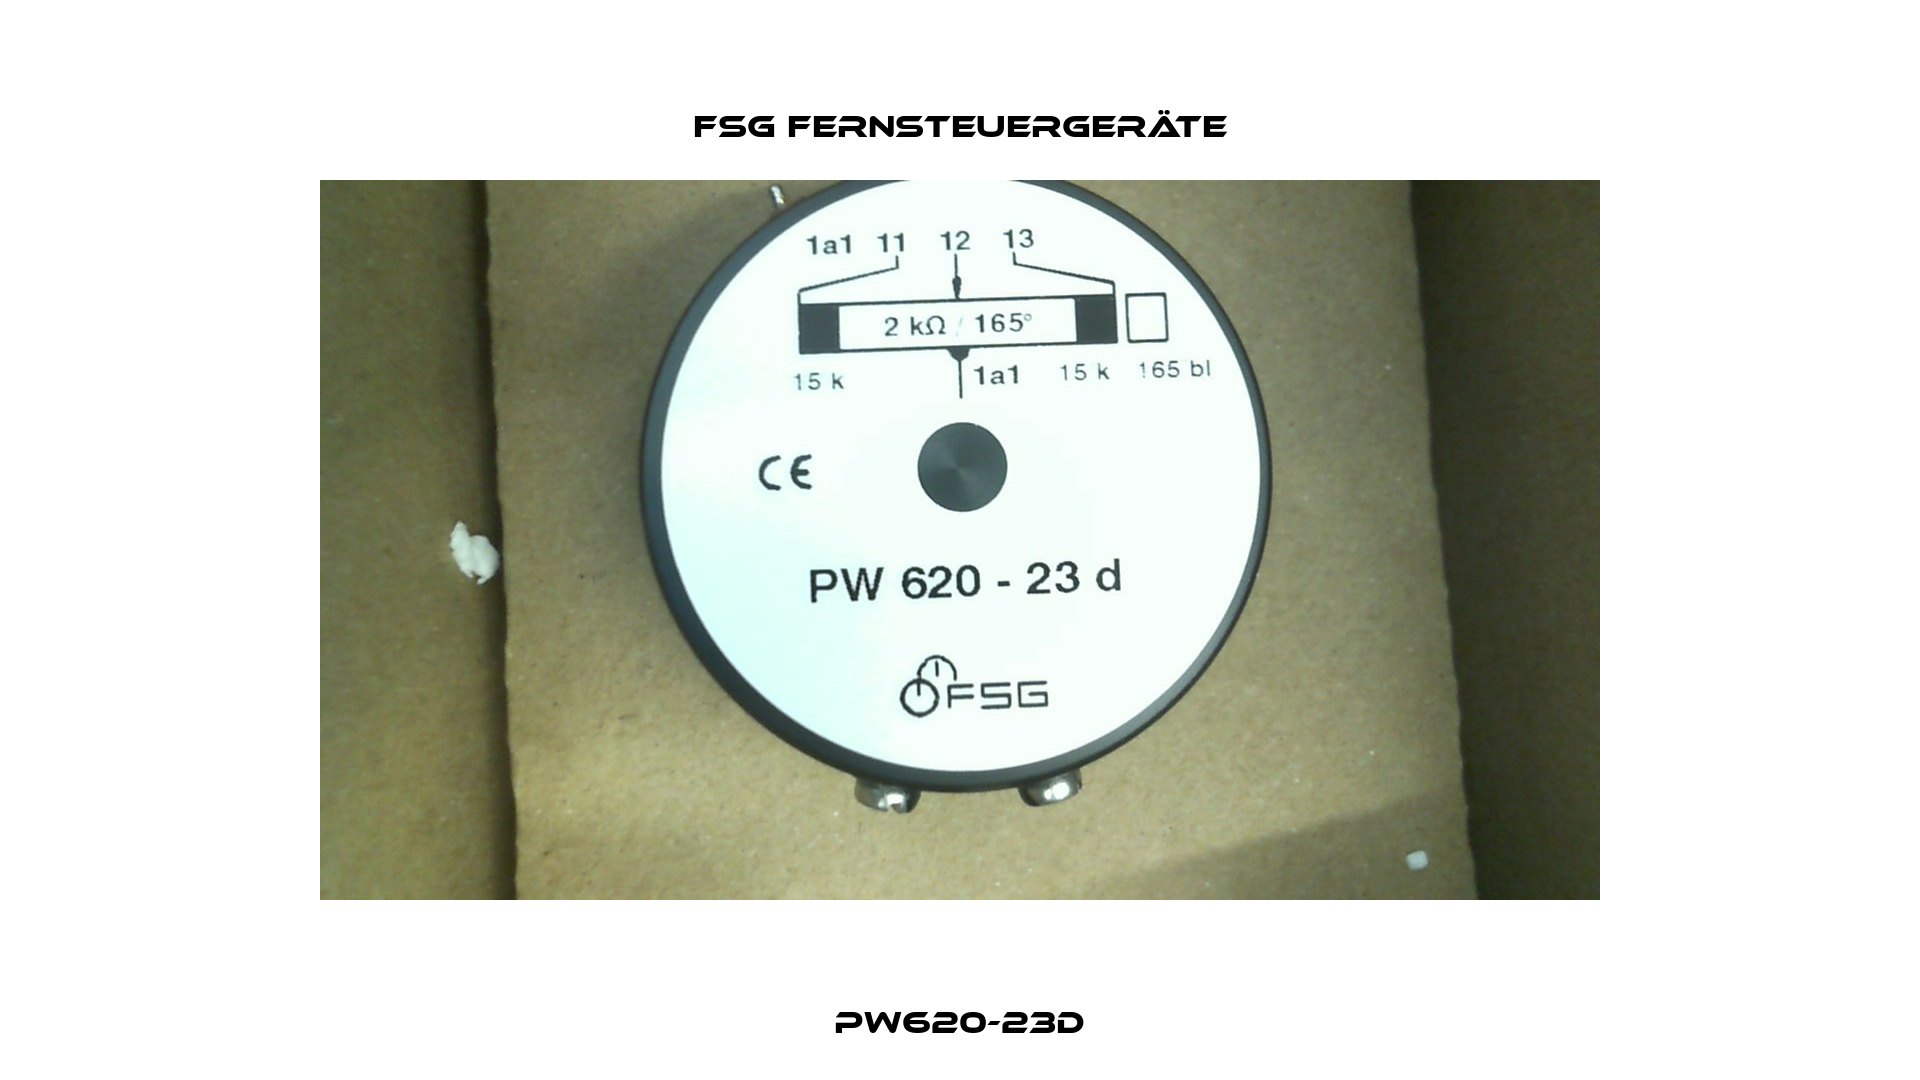 PW620-23d FSG Fernsteuergeräte